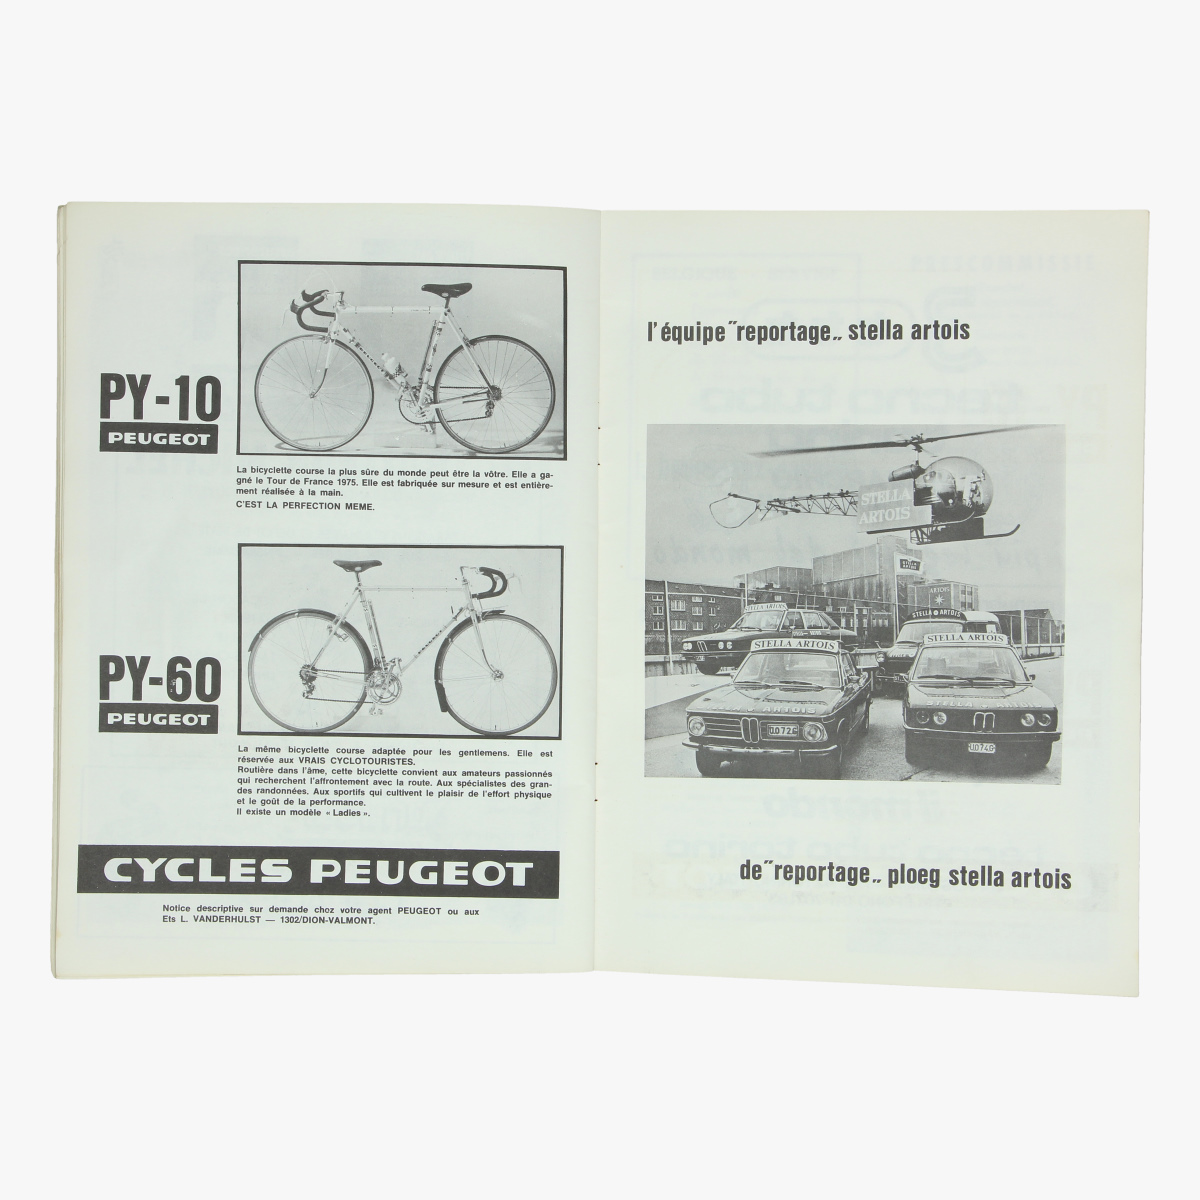 Afbeeldingen van boekje officieel programma wereldkampioenschap wielrennen op de weg belgie 1975 met verschillende handtekeningen